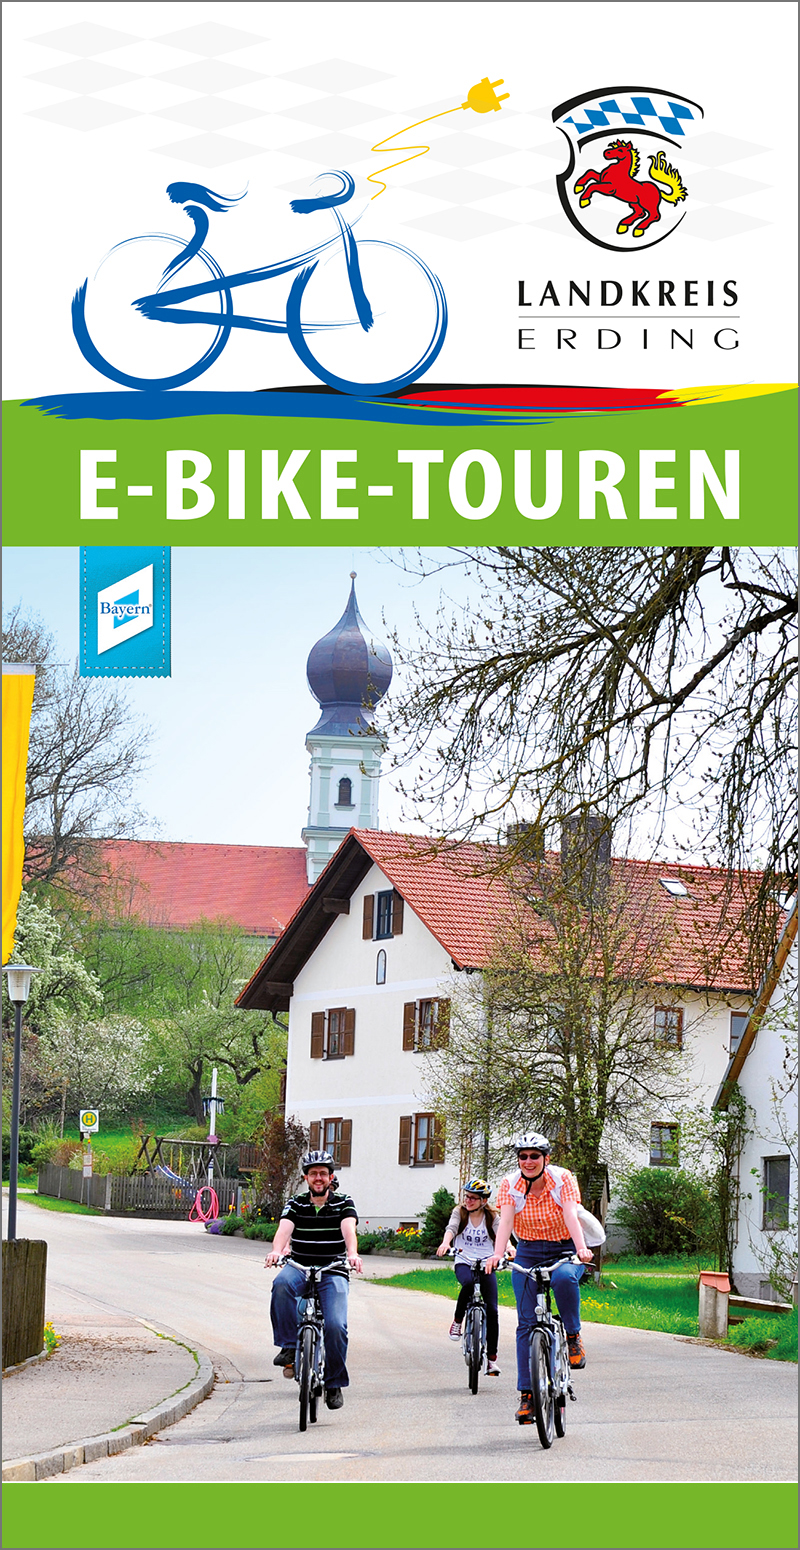 E-Bike Touren im Landkreis Erding